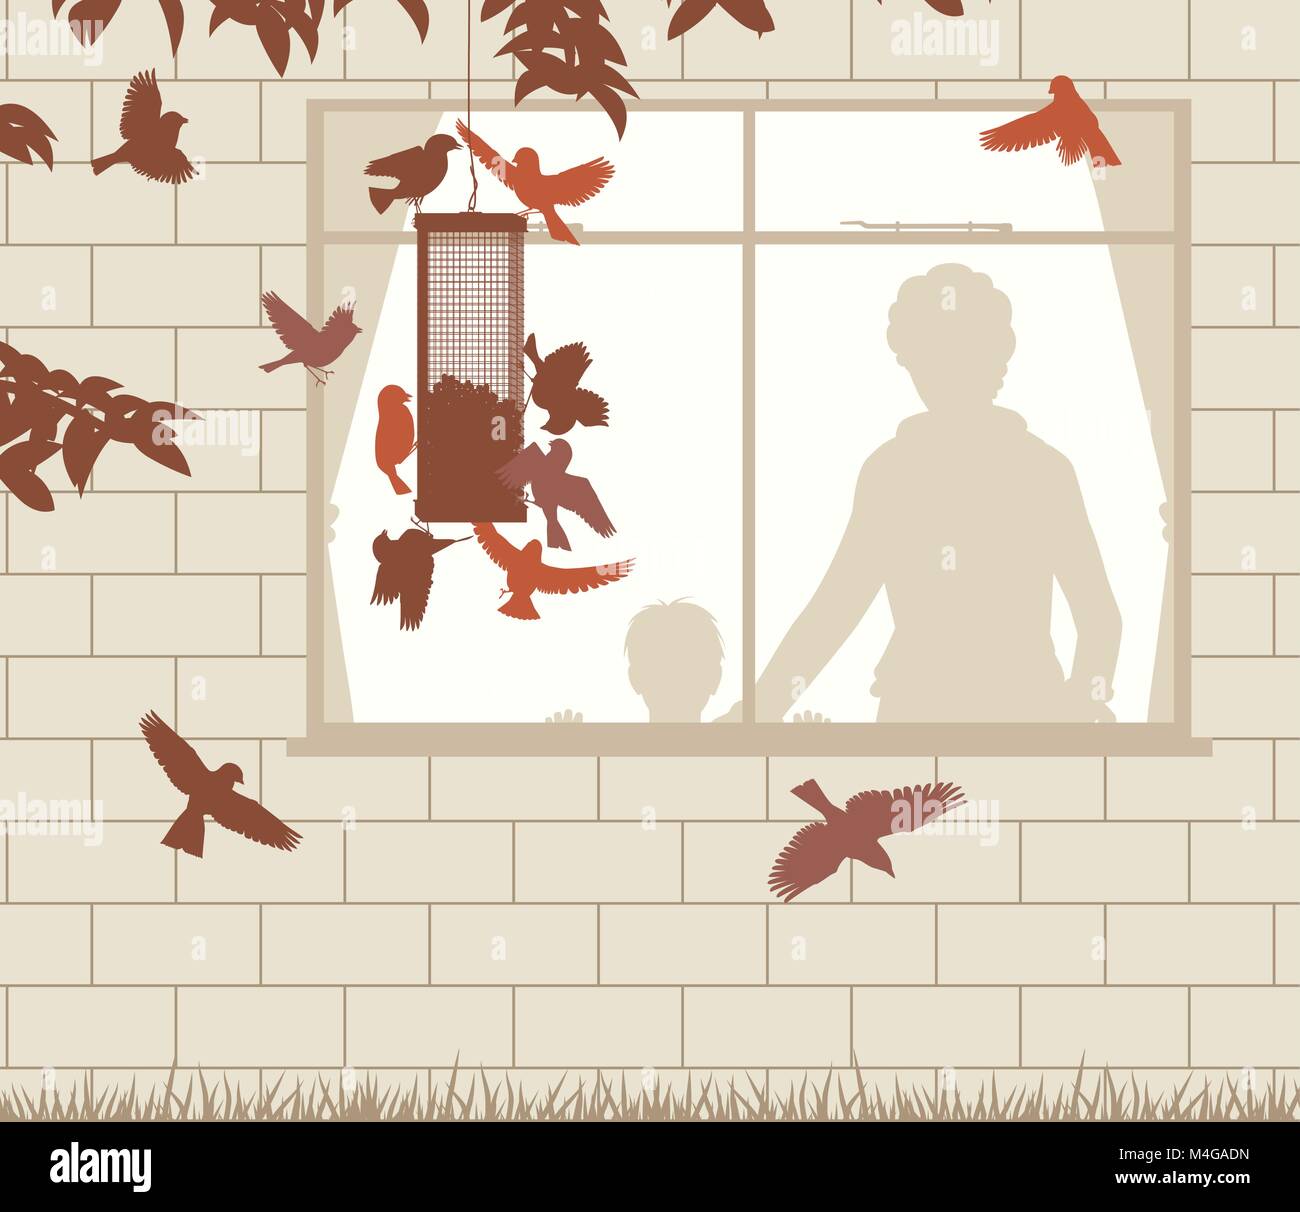 Ilustración vectorial editable de una mujer y un niño del avistamiento de aves en una horca alimentador a través de una ventana Ilustración del Vector